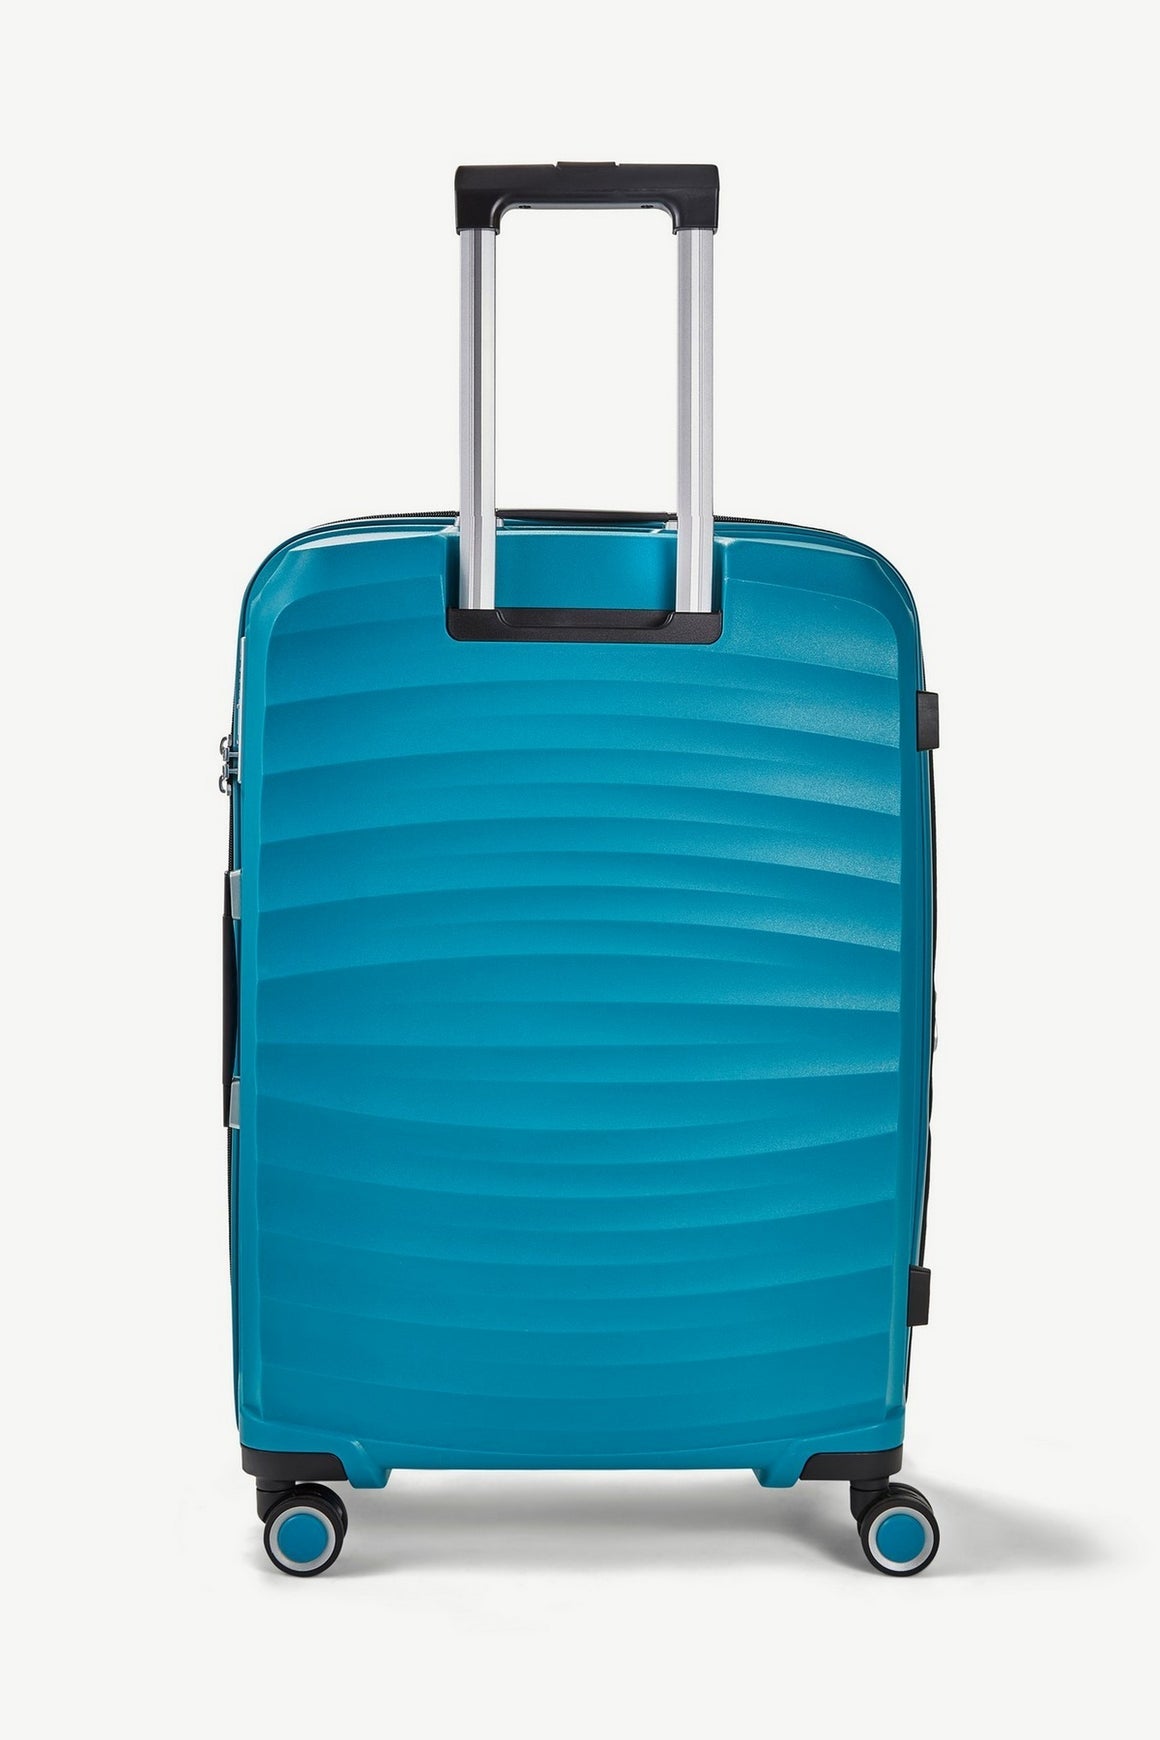 Sunwave Medium Suitcase